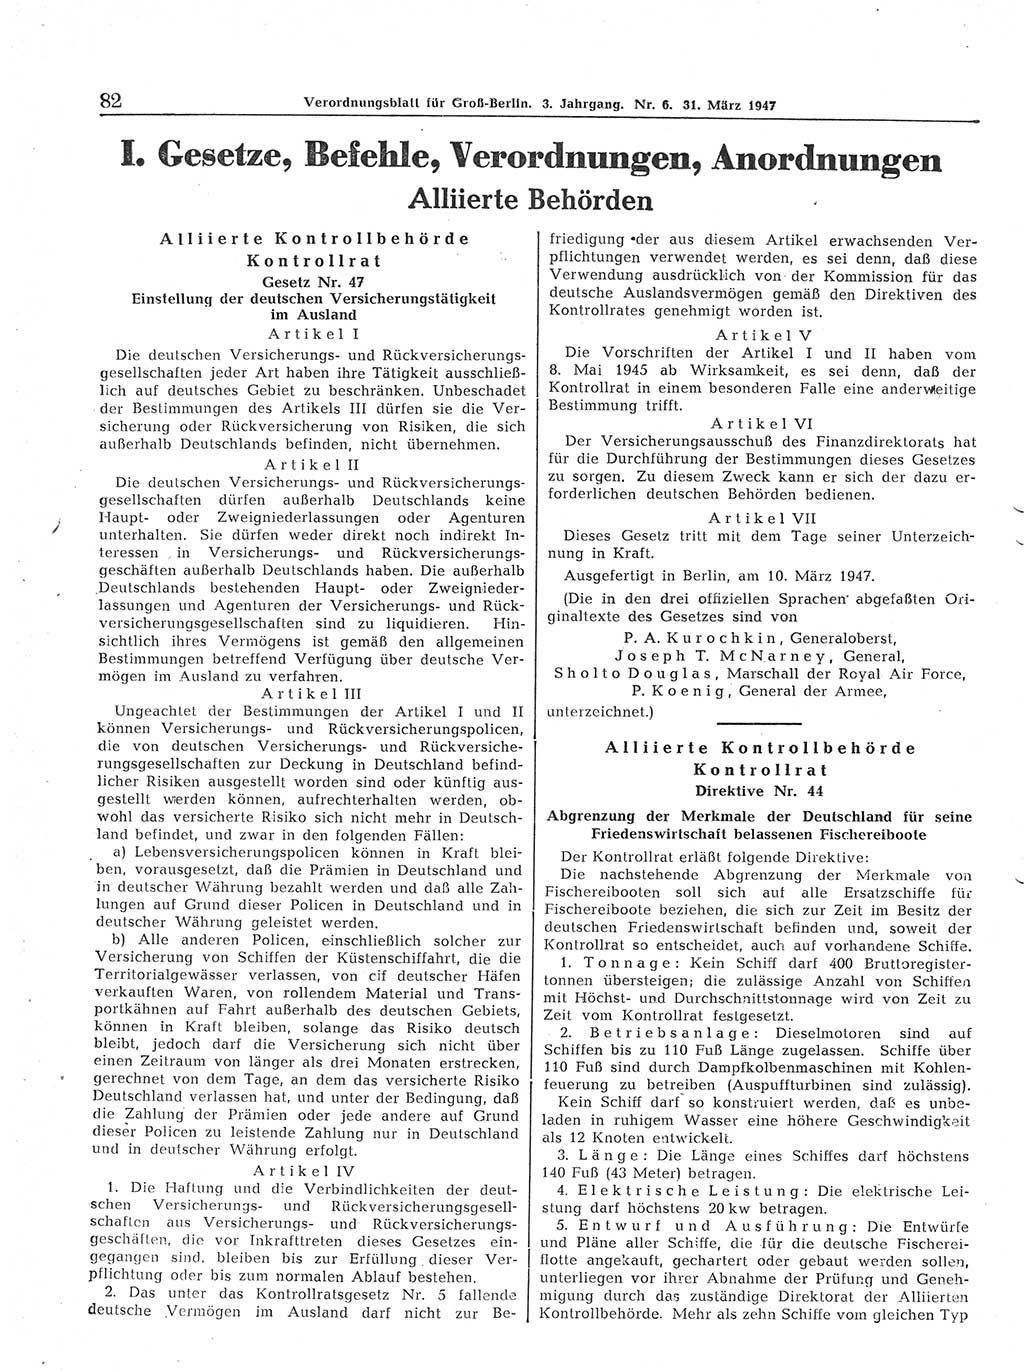 Verordnungsblatt (VOBl.) für Groß-Berlin 1947, Seite 82 (VOBl. Bln. 1947, S. 82)